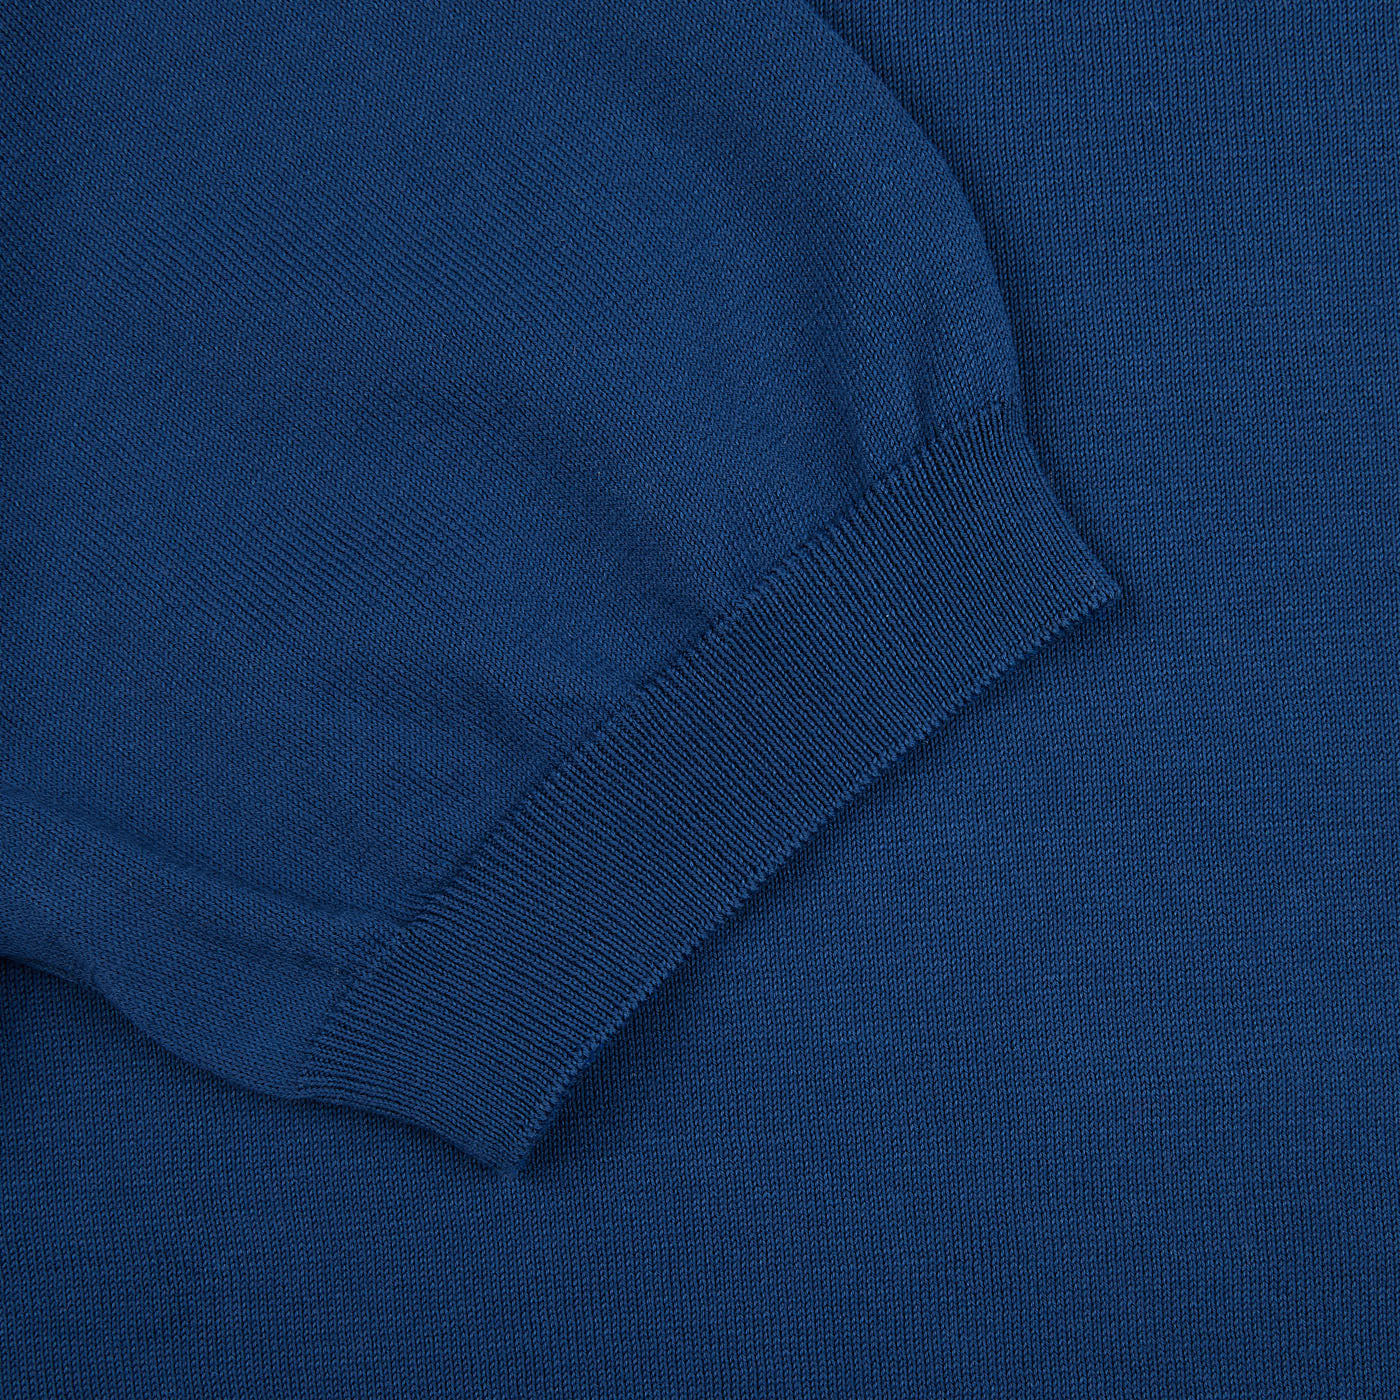 A close up of a lightweight Gran Sasso Indigo Blue Knitted Organic Cotton T-Shirt.